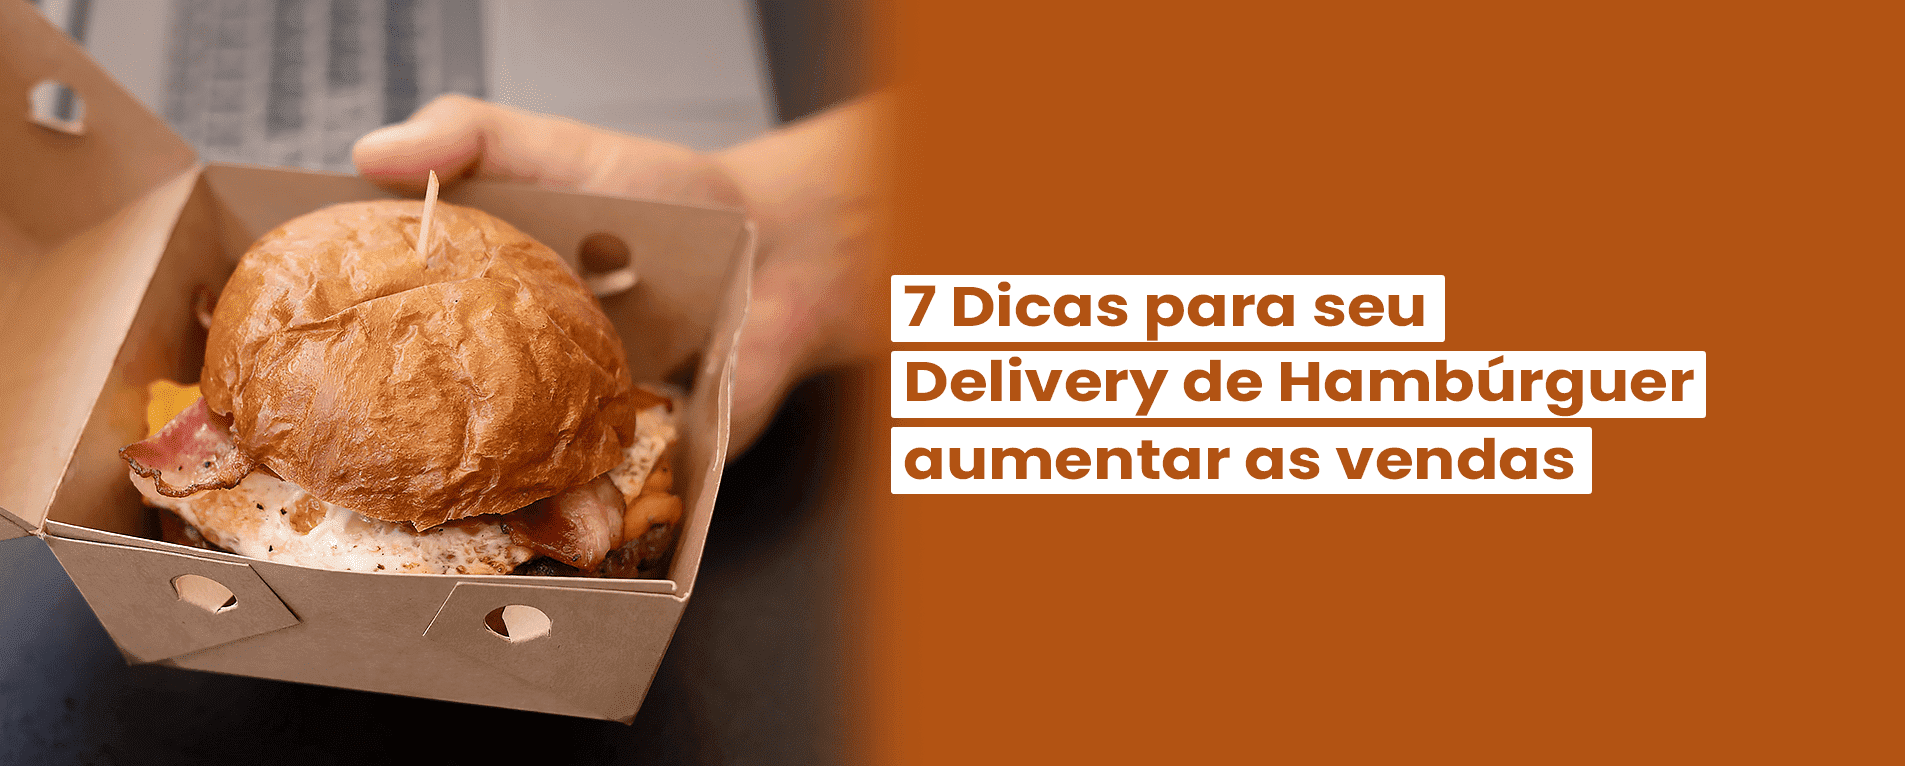 7 Dicas para seu Delivery de Hambúrguer Aumentar as Vendas